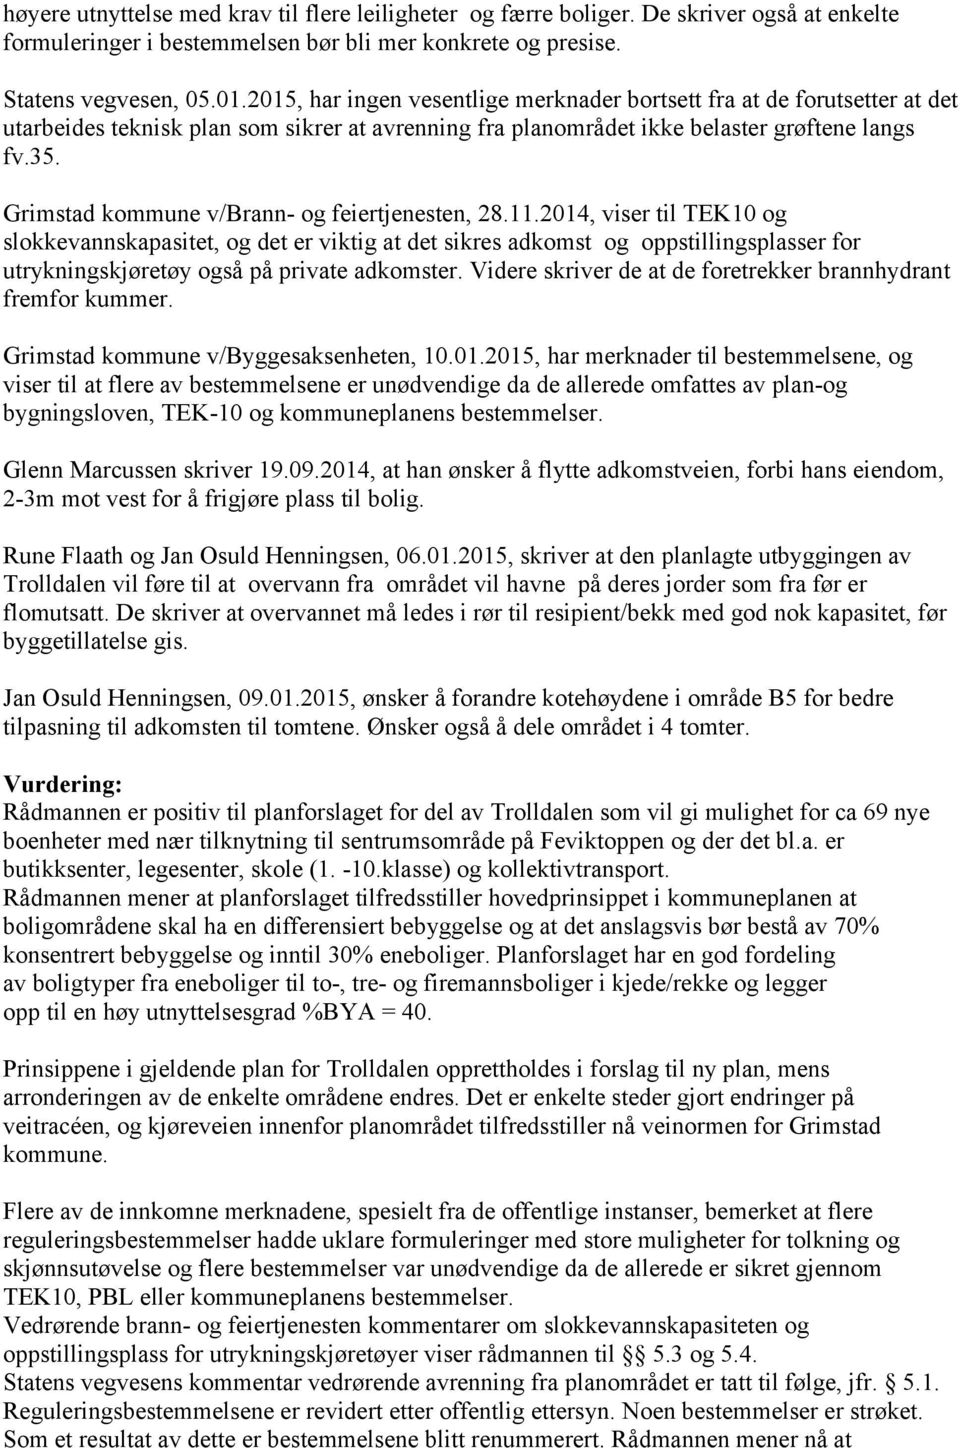 Grimstad kommune v/brann- og feiertjenesten, 28.11.